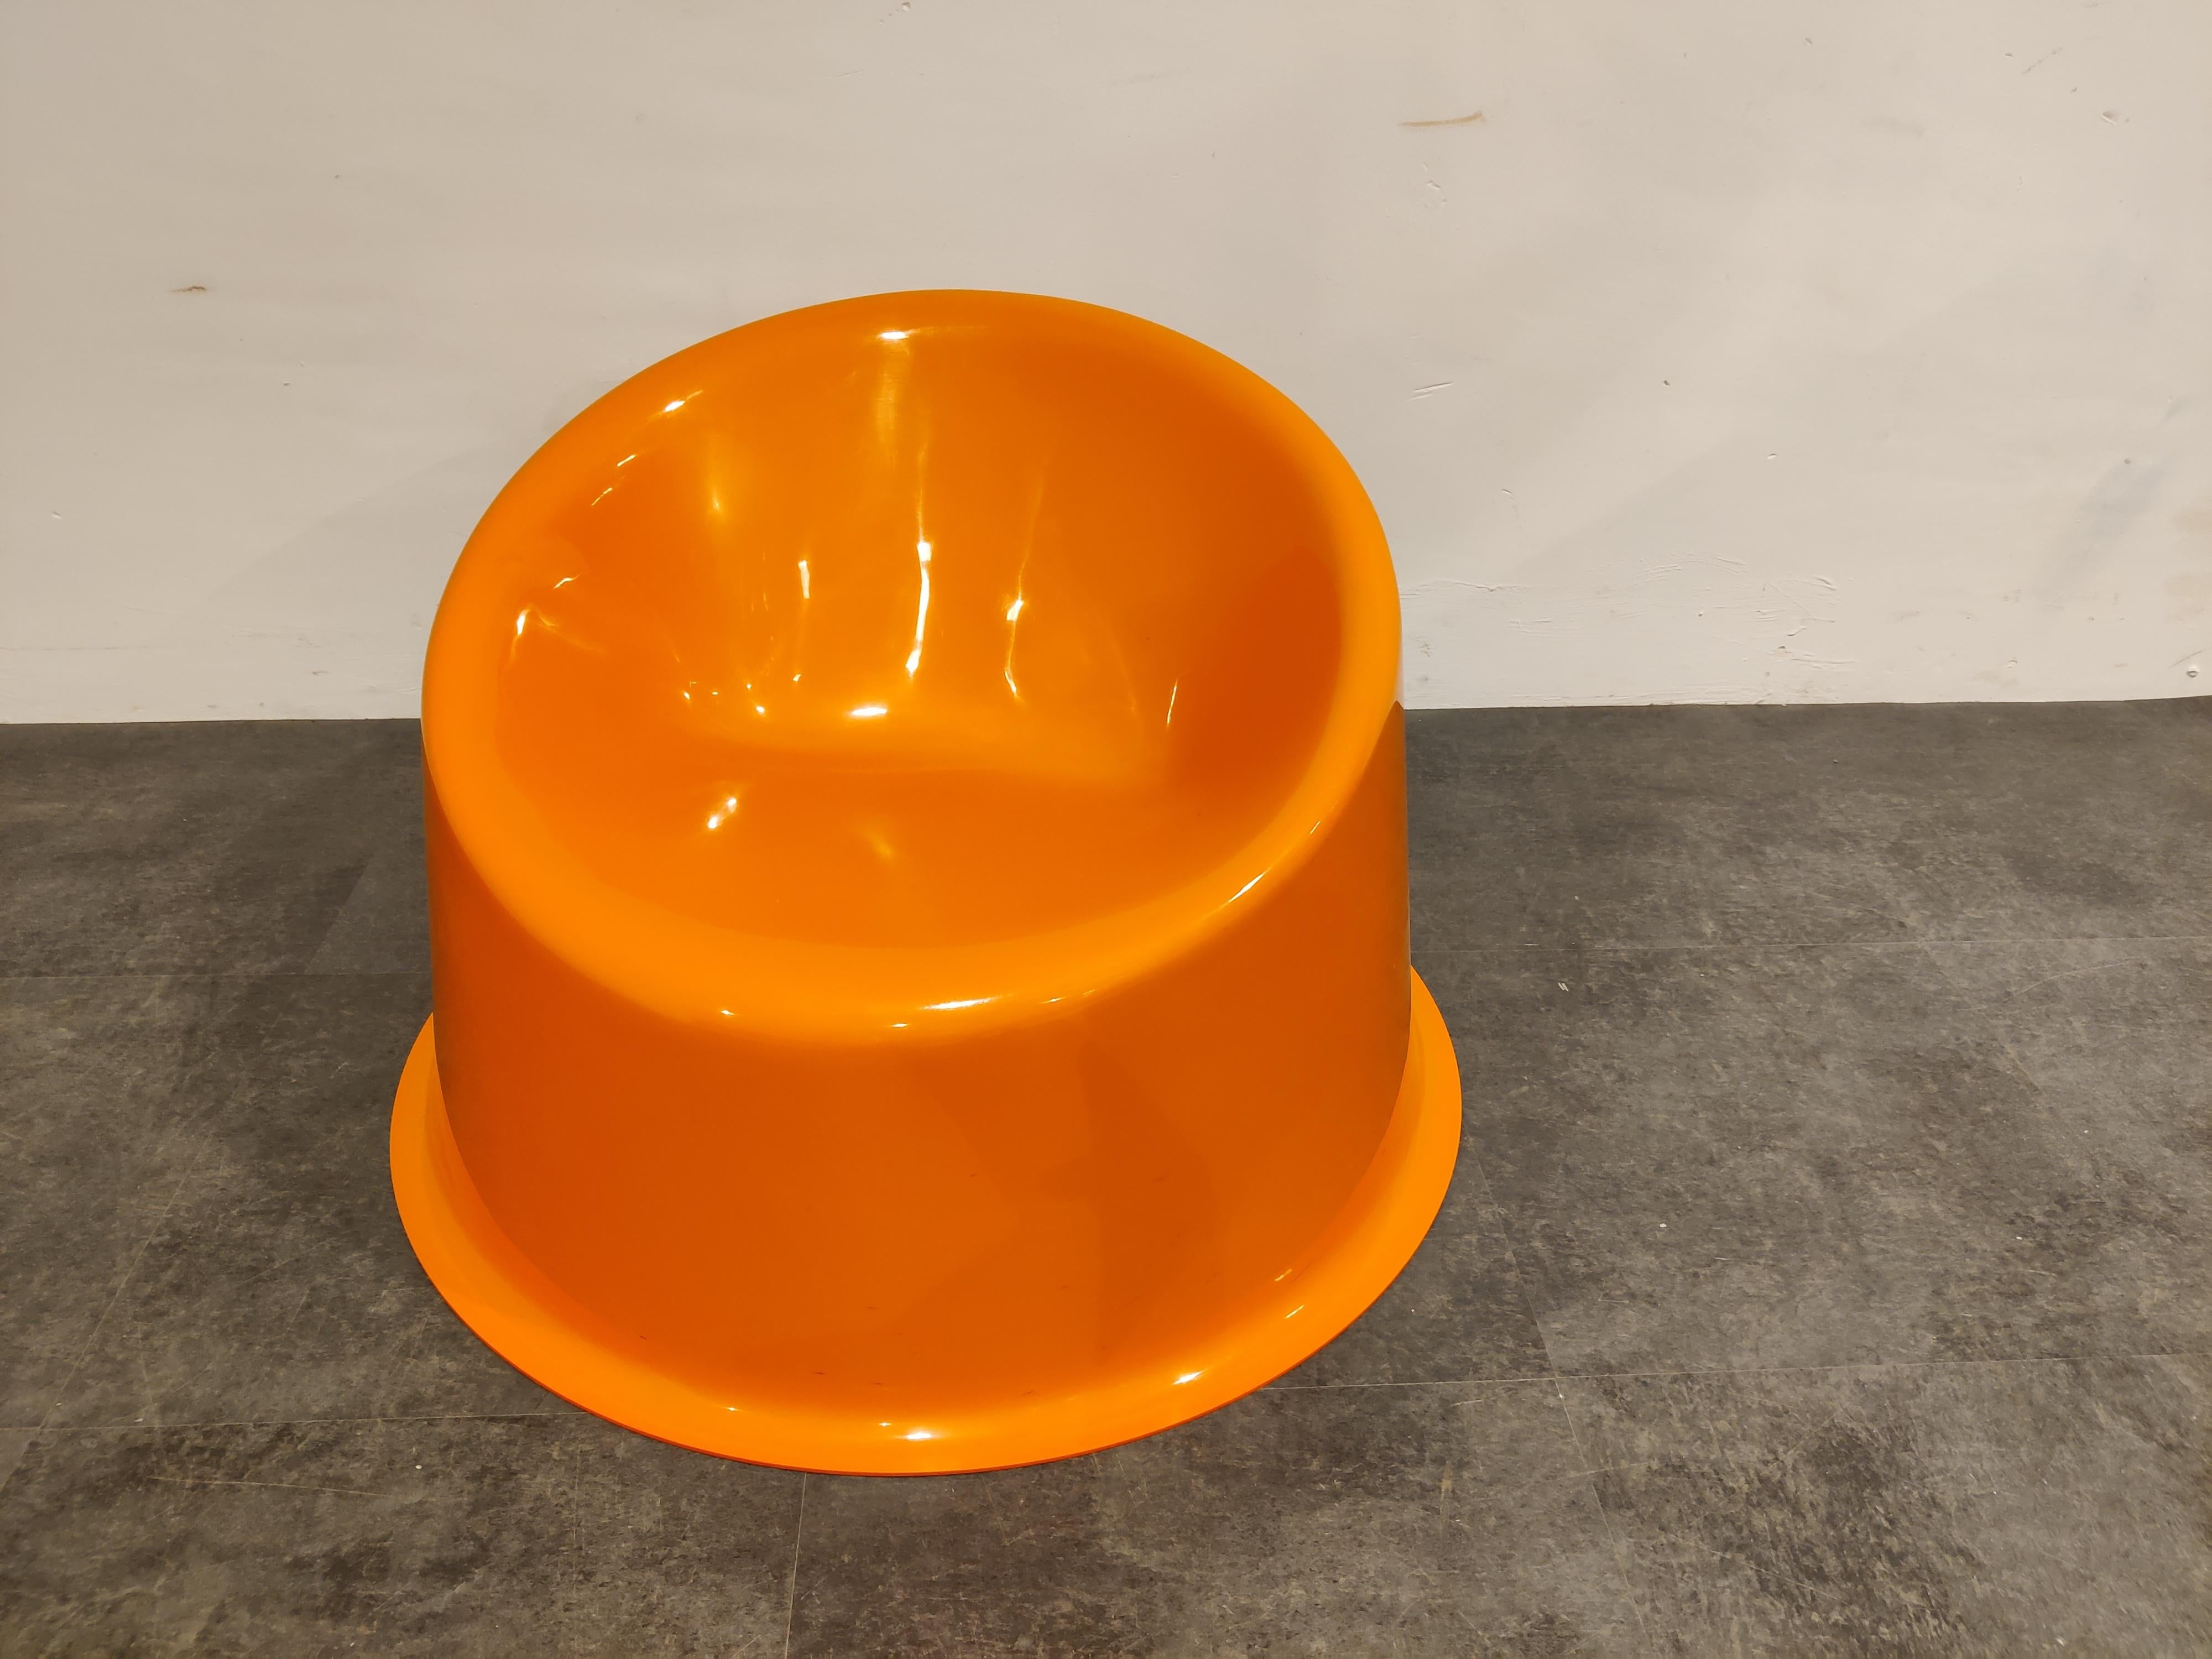 Orangefarbener Vintage-Stuhl POP, entworfen von Verner Panton für Innovation labeled sep 2000.

Guter Zustand

Abmessungen:

Höhe: 54cm
Durchmesser: 81 cm.

 